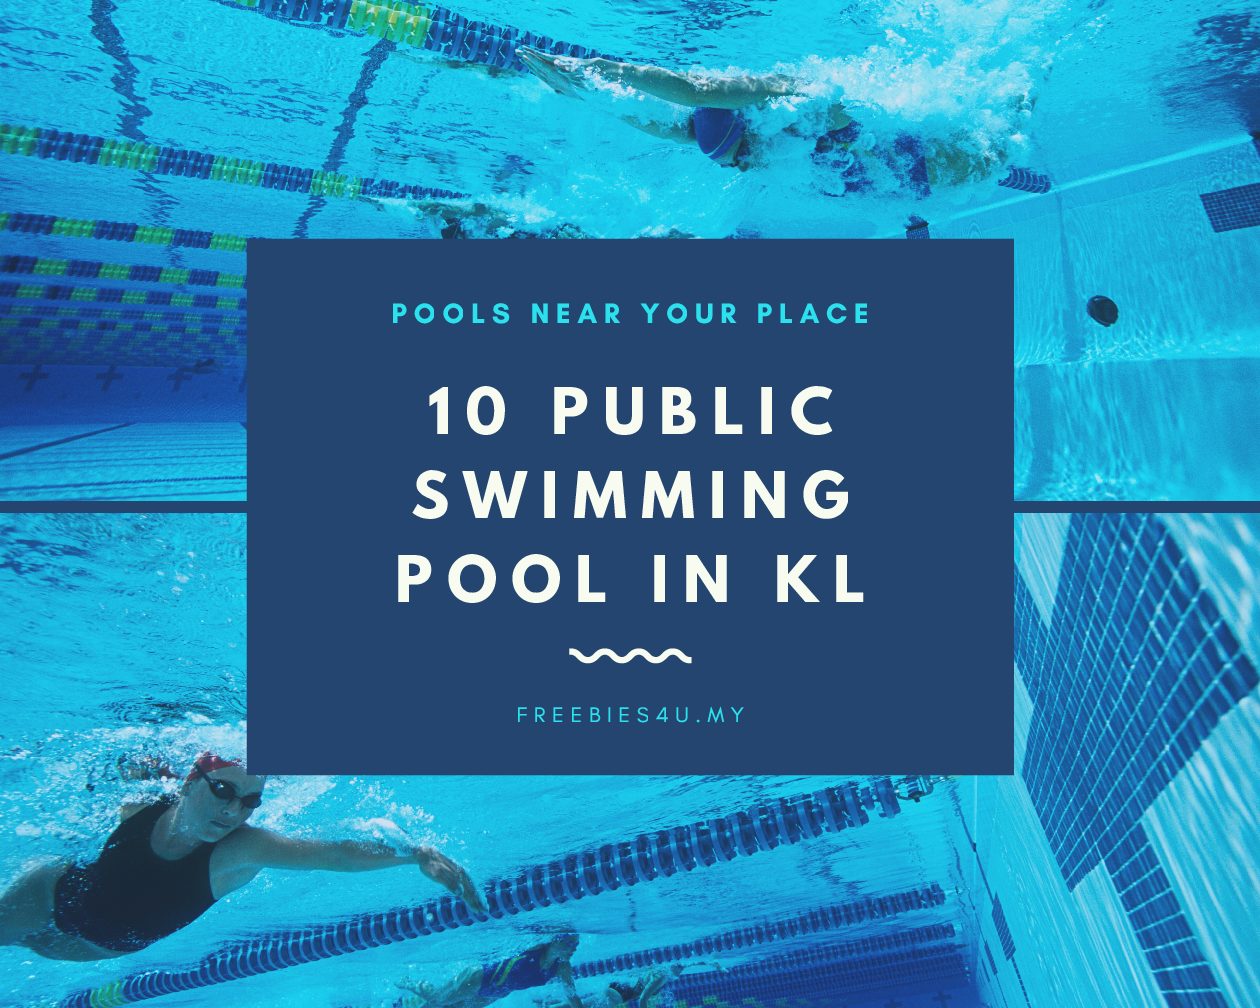 Top 10 Public Swimming Pool in KL, Malaysia